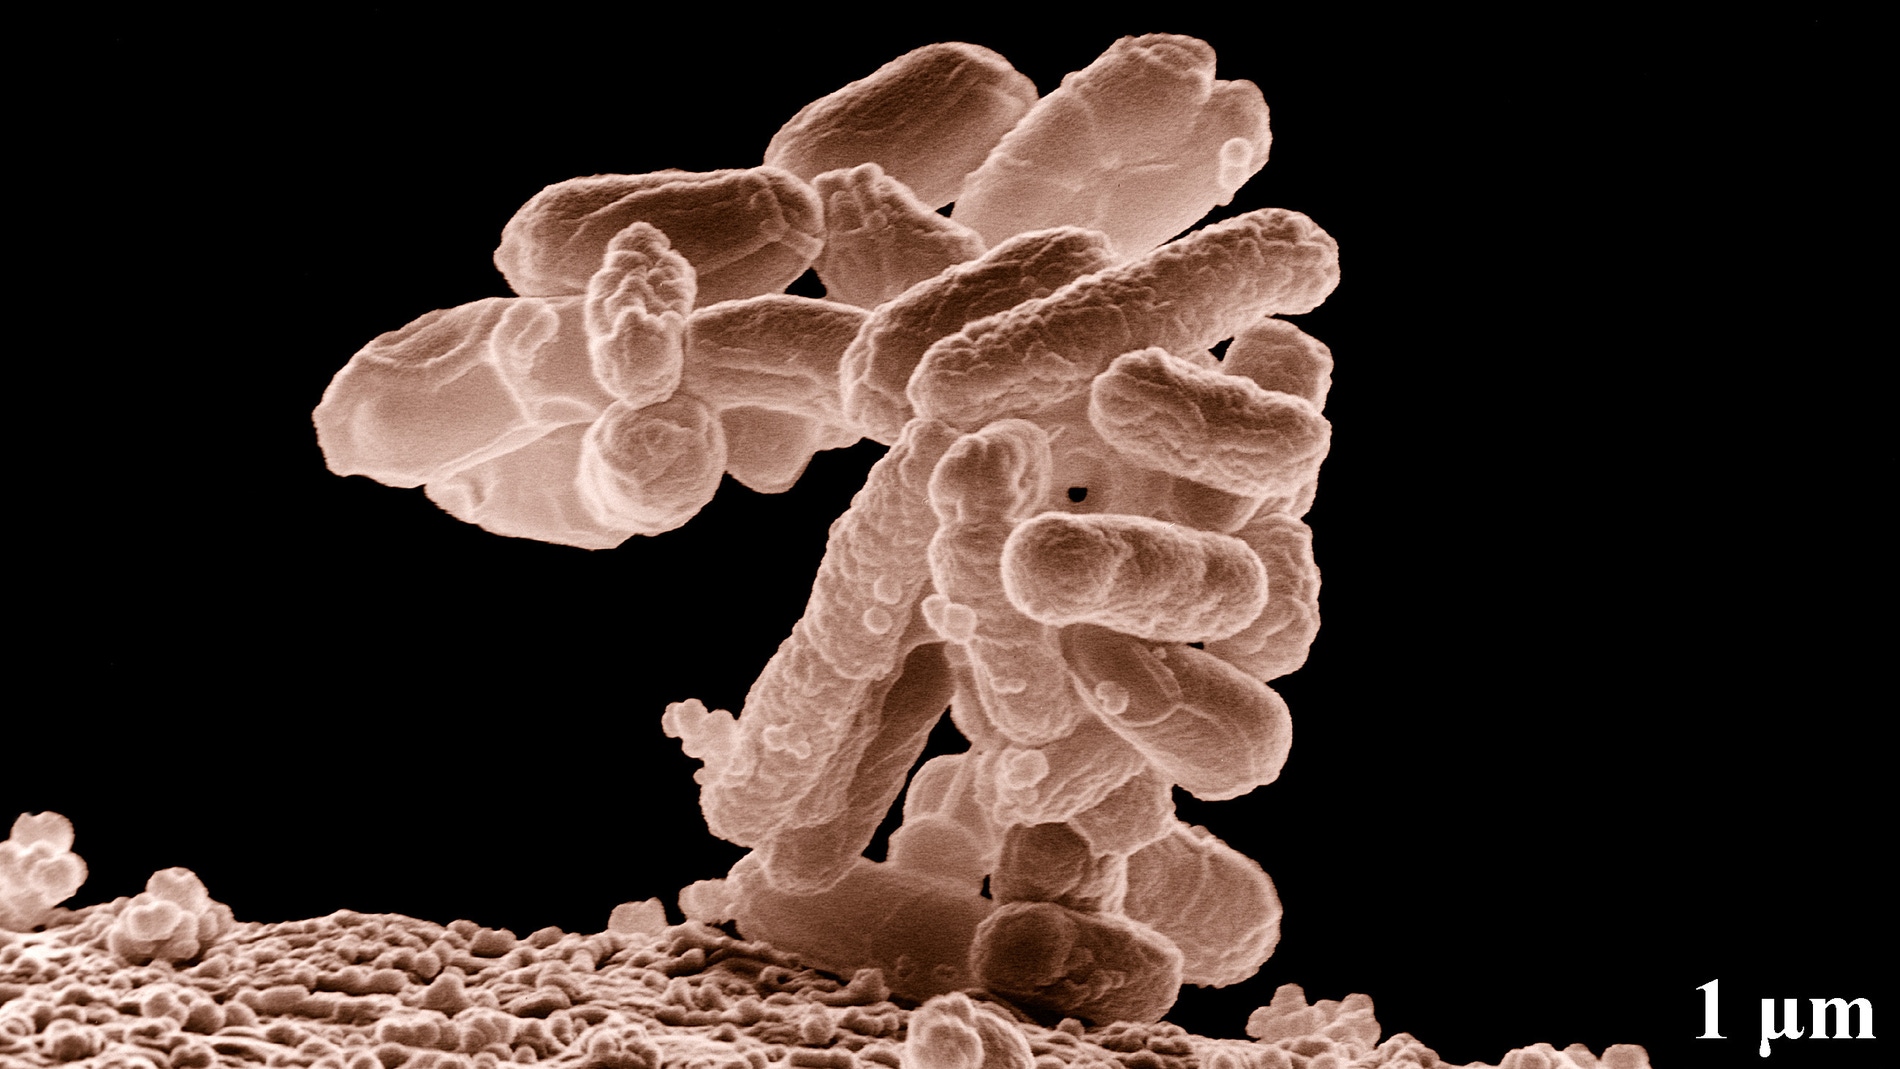 Bacterias E. coli. Fuente: Wikimedia Commons